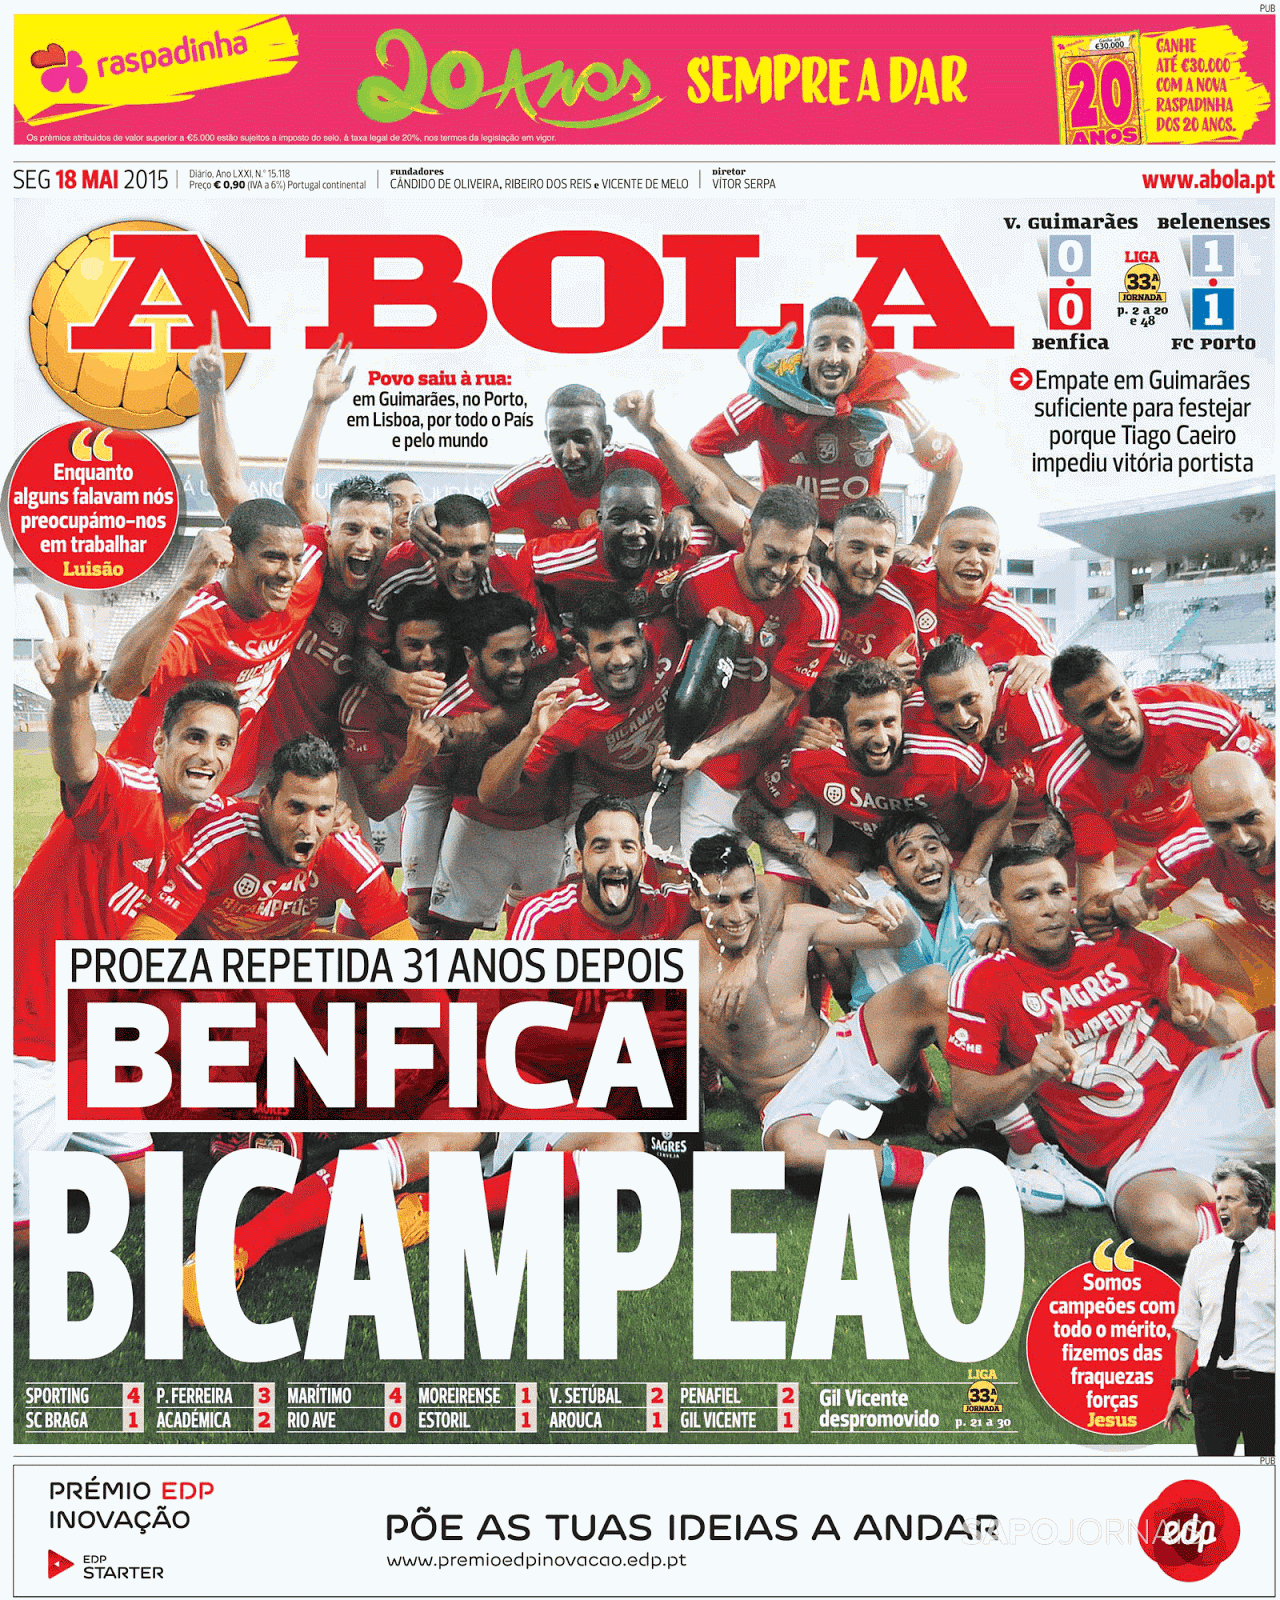 Benfica Bicampeão 14*15